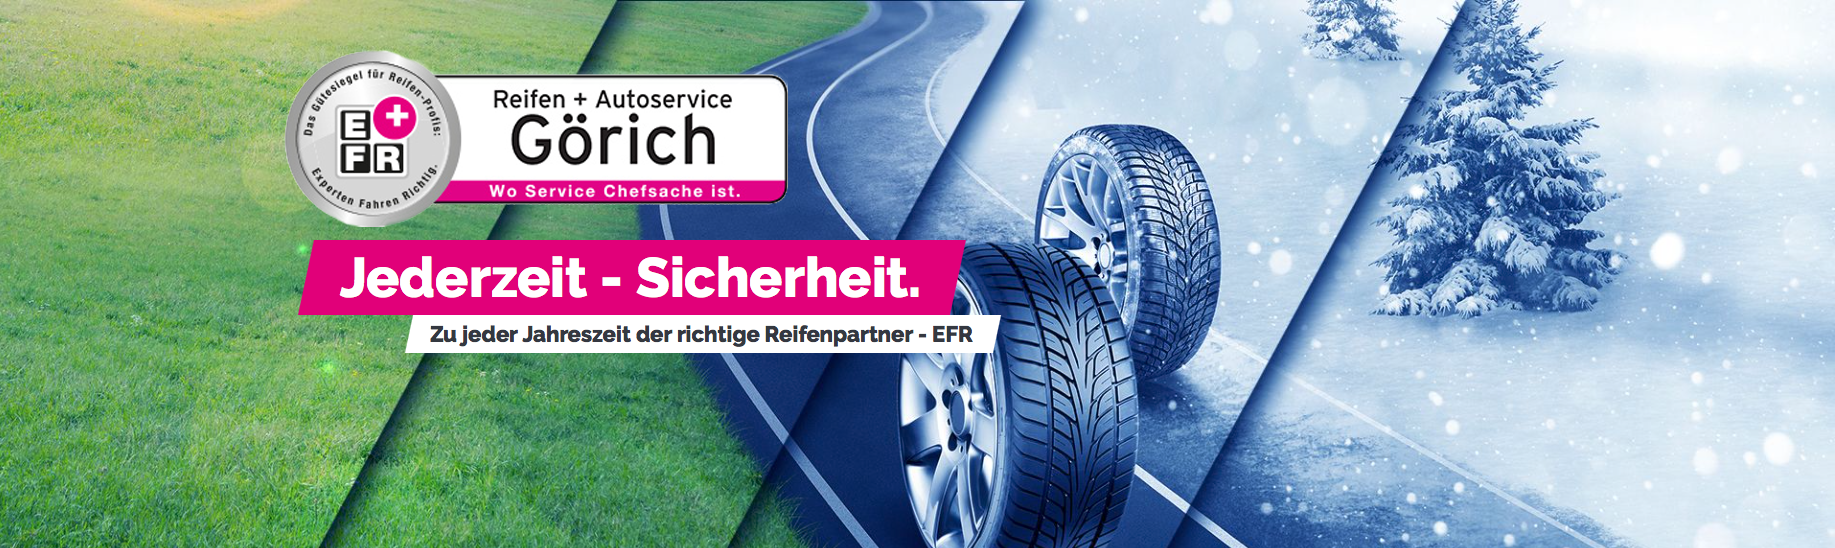 Reifen Görich Reifen-Service KFZ-Service Autoservice Reifenreparatur HU Dingelstädt Eichsfeld